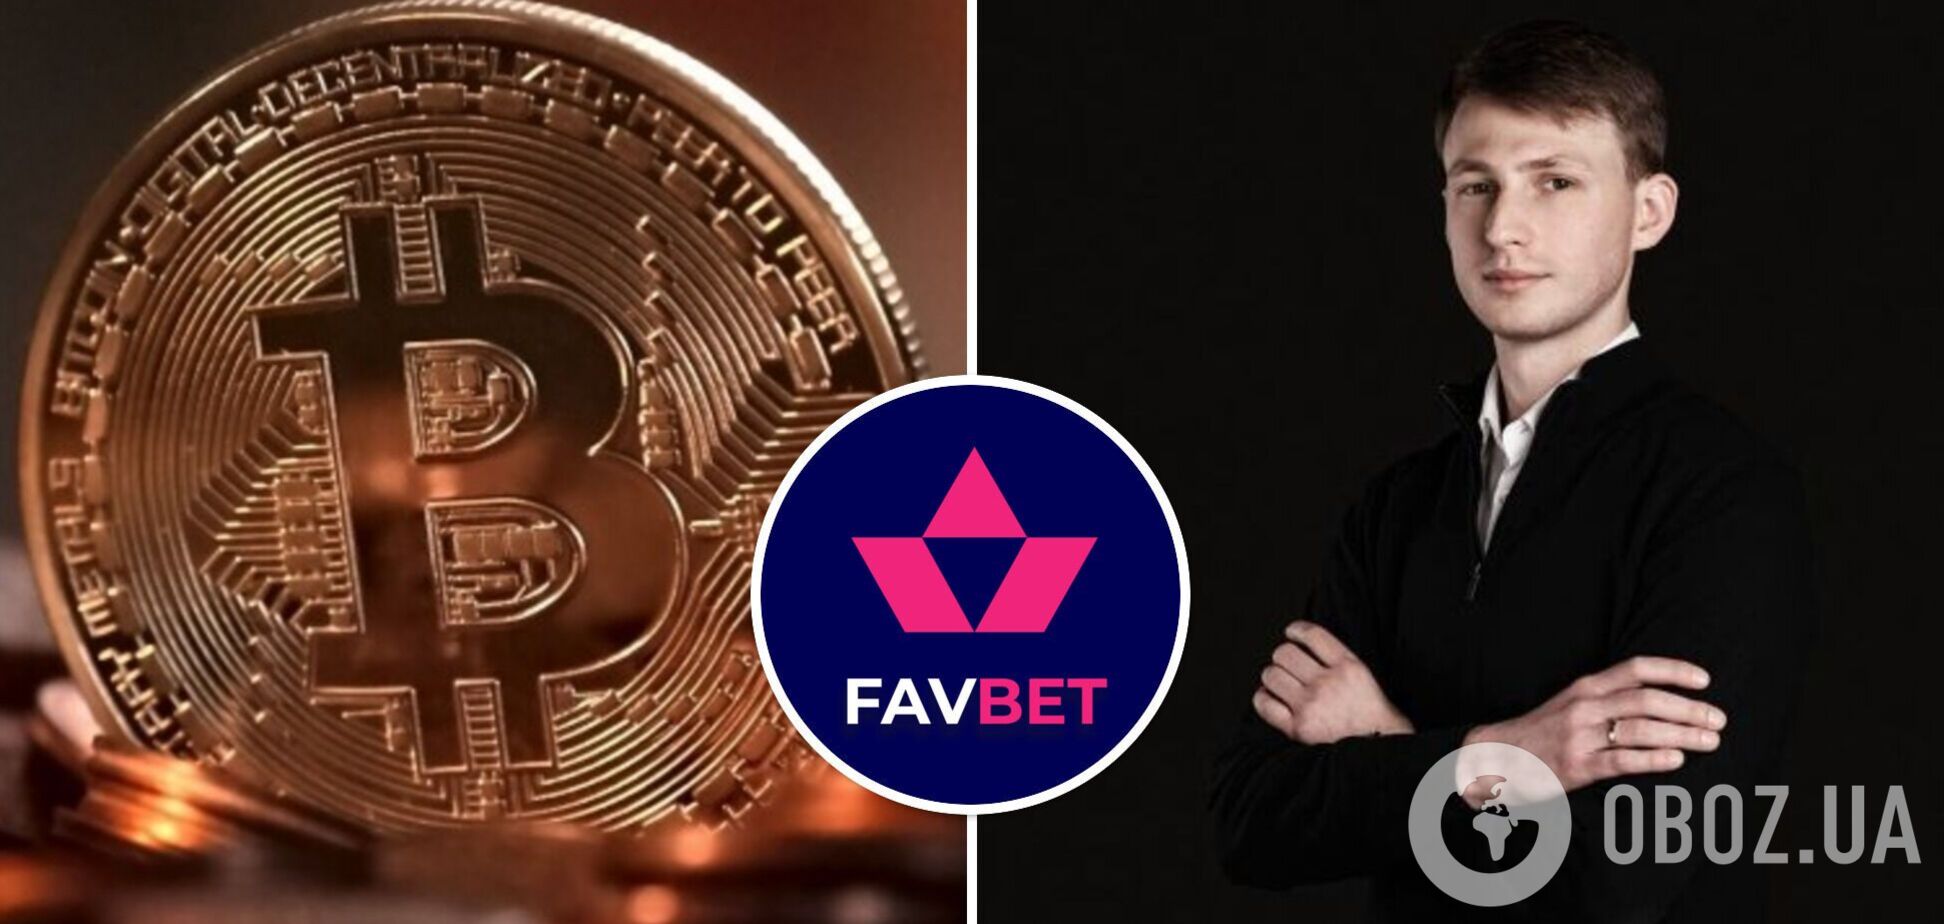 Favbet поддерживает курс государства на легализацию криптовалюта: заявление компании